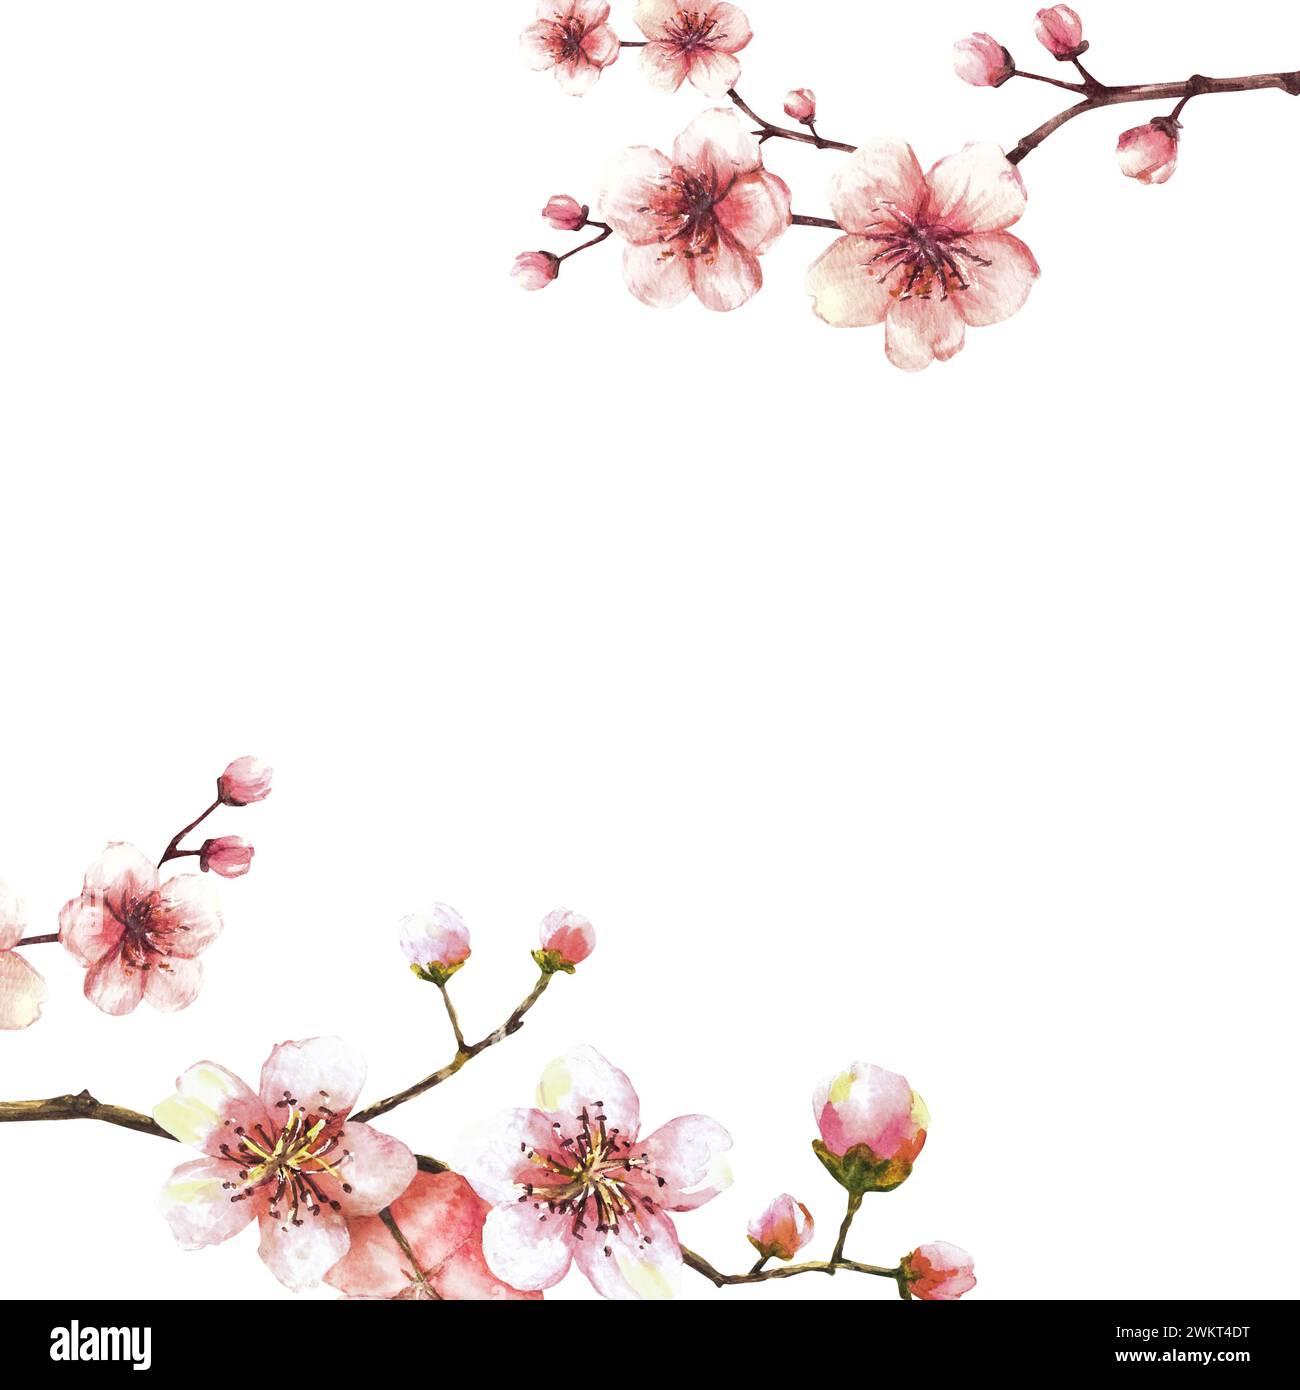 Une branche florissante à partir d'un modèle d'arbre de printemps. Sakura, cerise, pomme ou abricot bourgeons et fleurs en fleurs Springtime aquarelle clipart pour l'étiquette de carte Banque D'Images